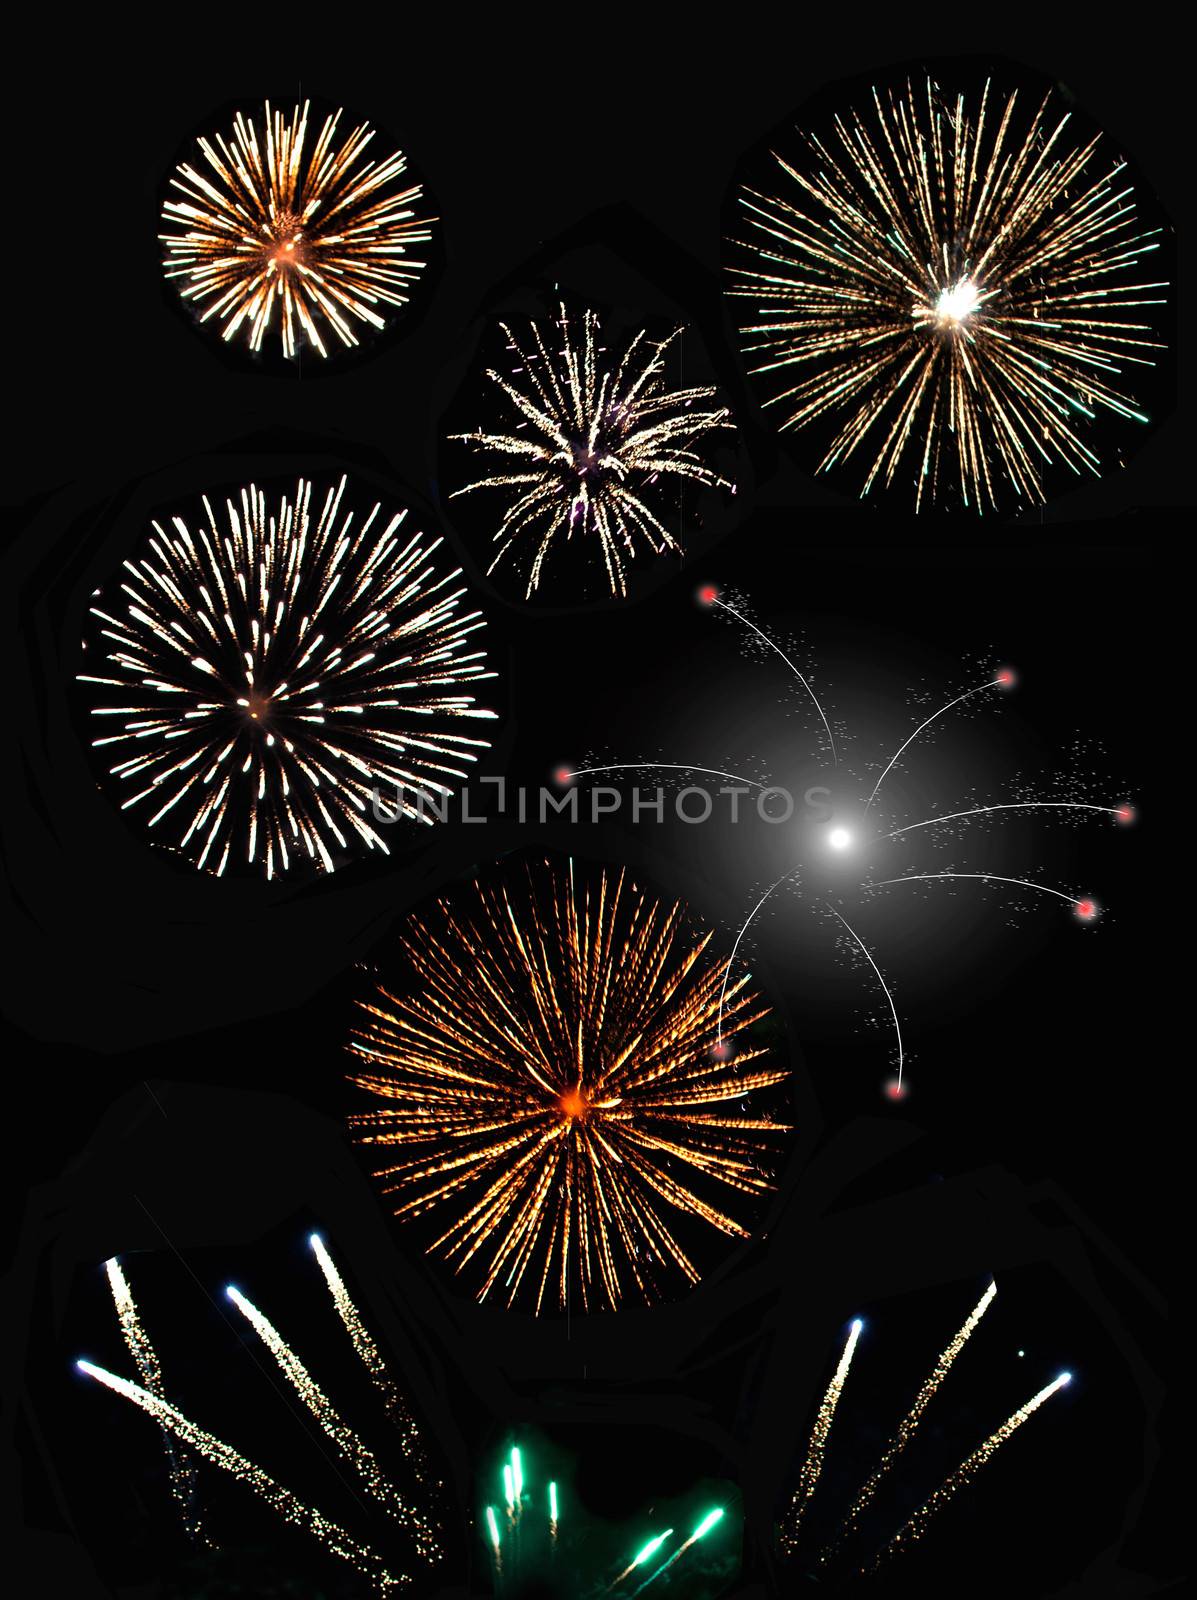 Fireworks  by unikpix